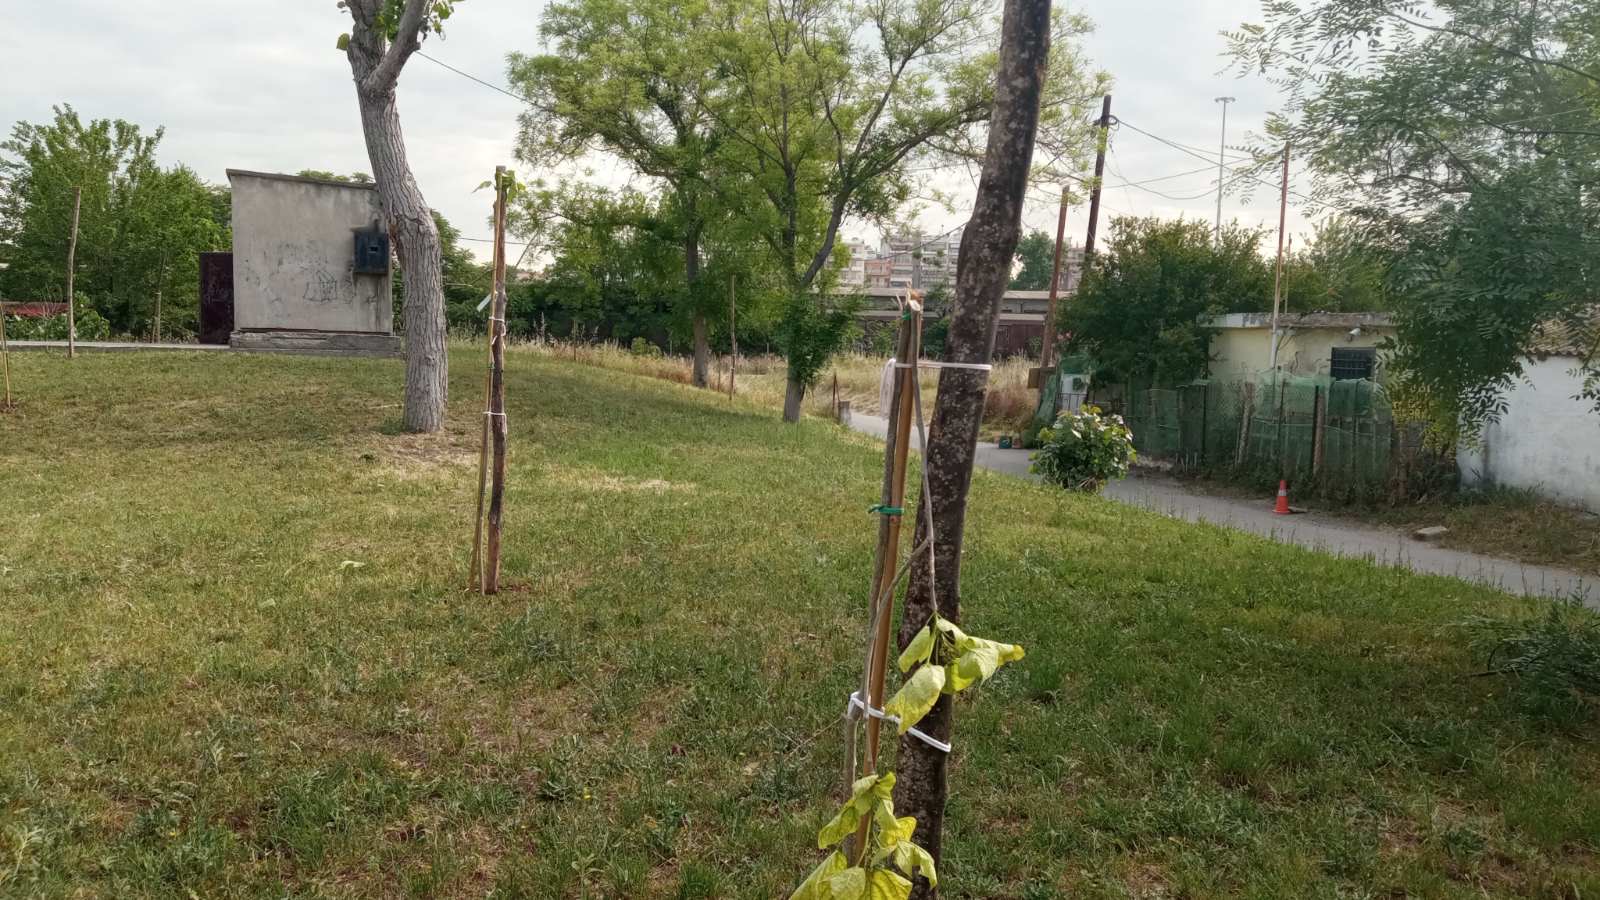 εύοσμος: άγνωστοι ξερίζωσαν δέντρα που είχαν φυτευτεί για τα θύματα των τεμπών